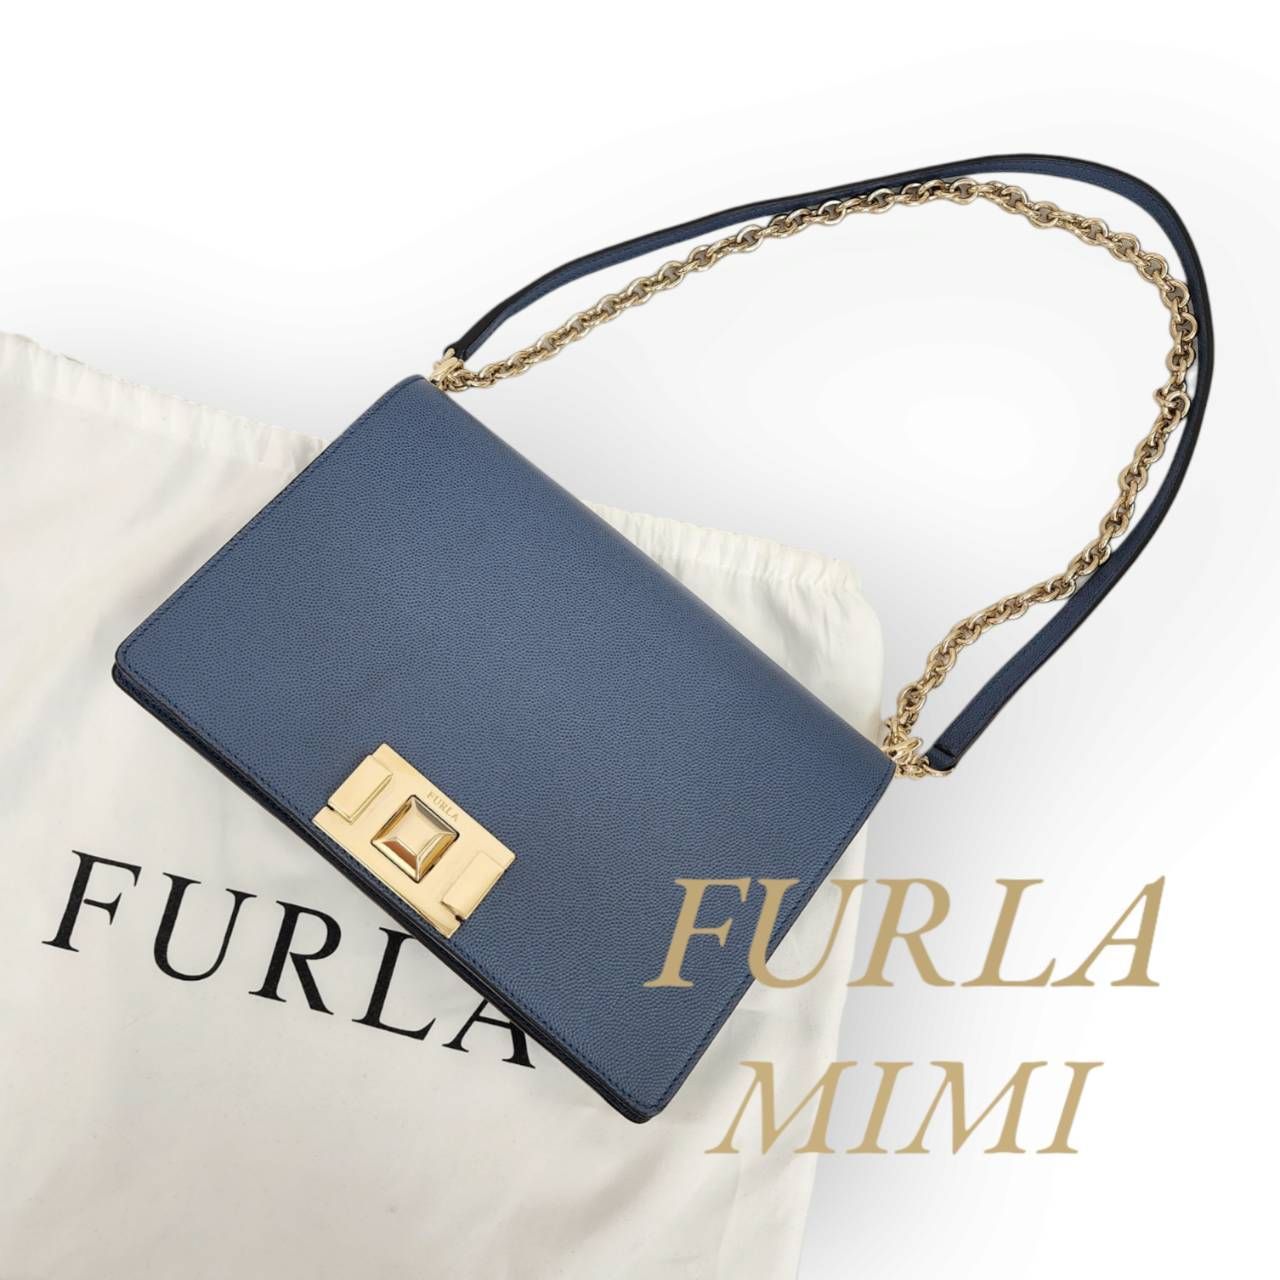 FURLA フルラ MIMI ミミ ショルダーバッグ ブルー ネイビー系 保存袋